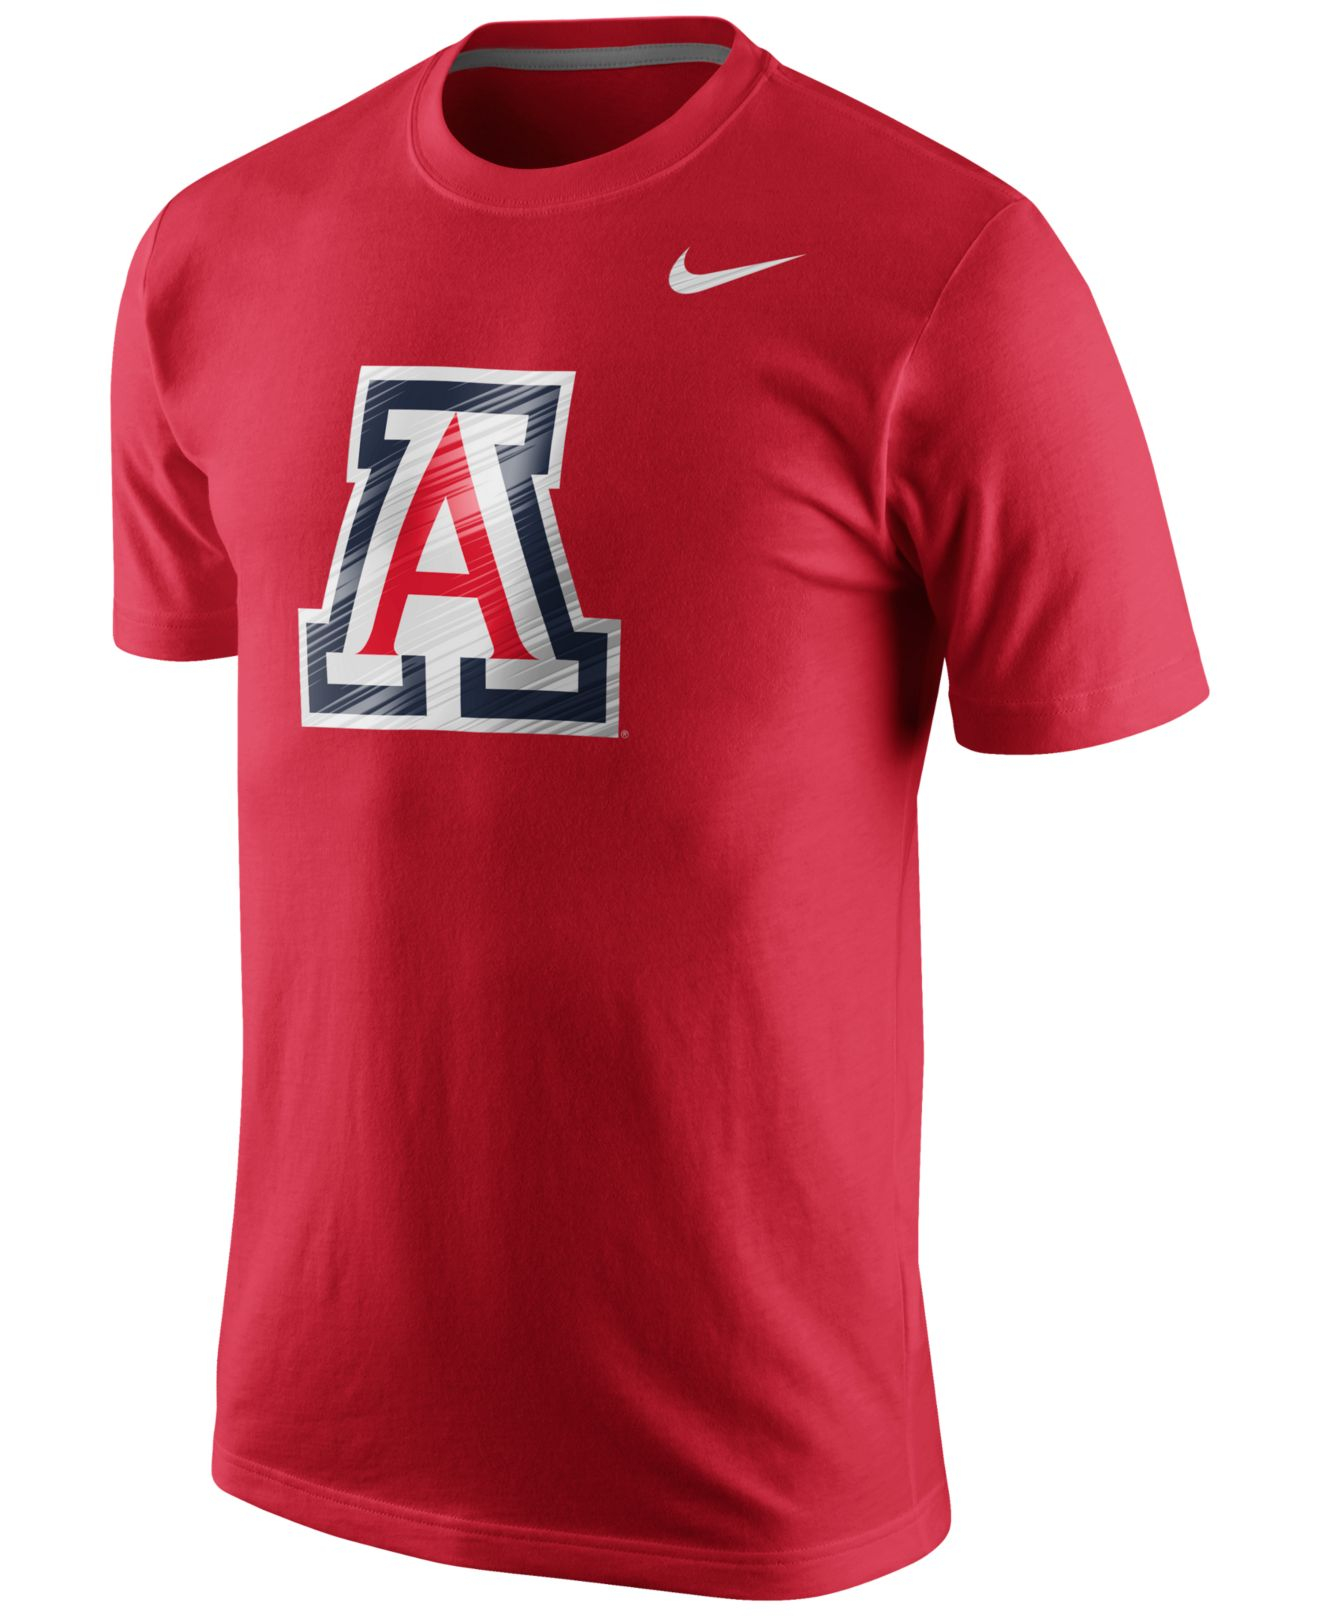 Lyst - Nike Men's Arizona Wildcats Warp Logo T-shirt in Red for Men